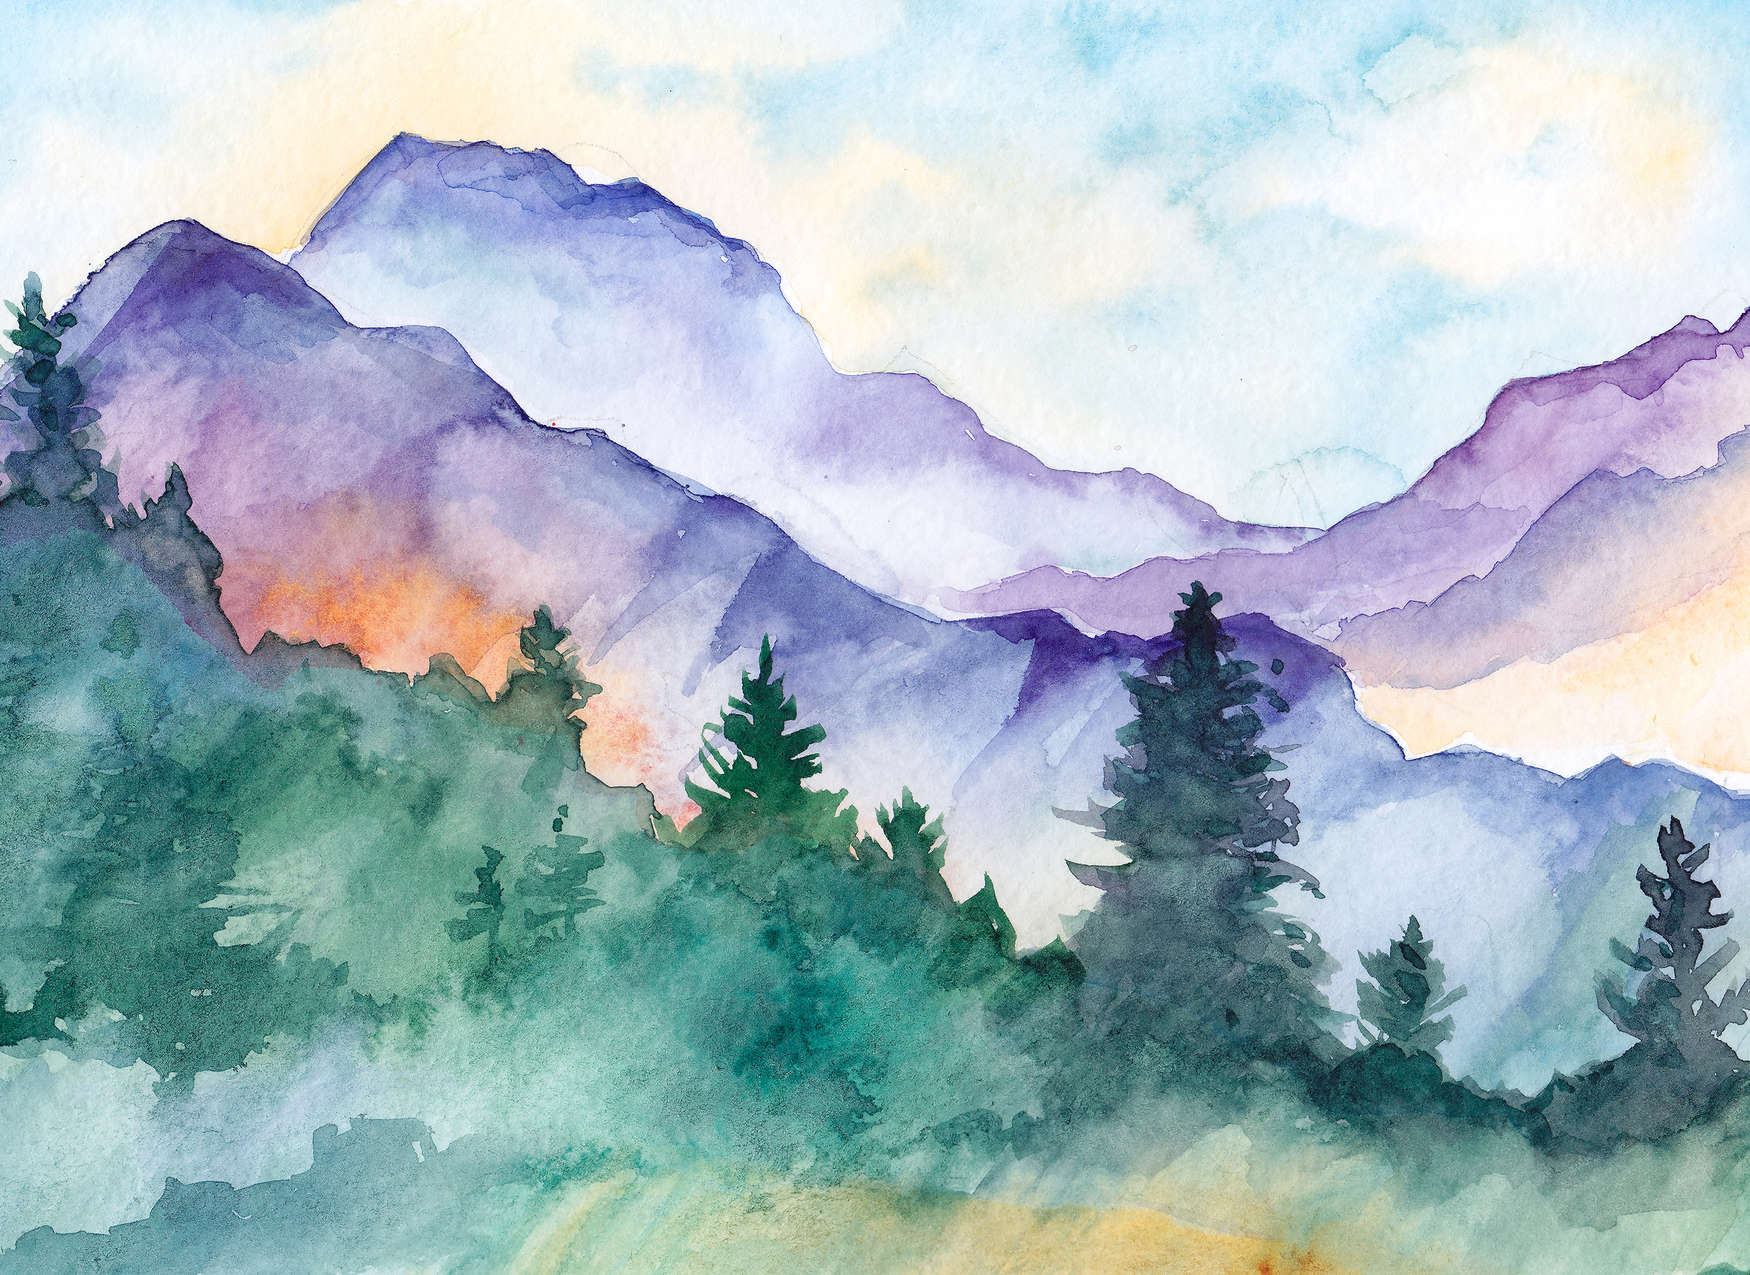             Papier peint panoramique paysage de montagne peint à l'aquarelle - multicolore
        